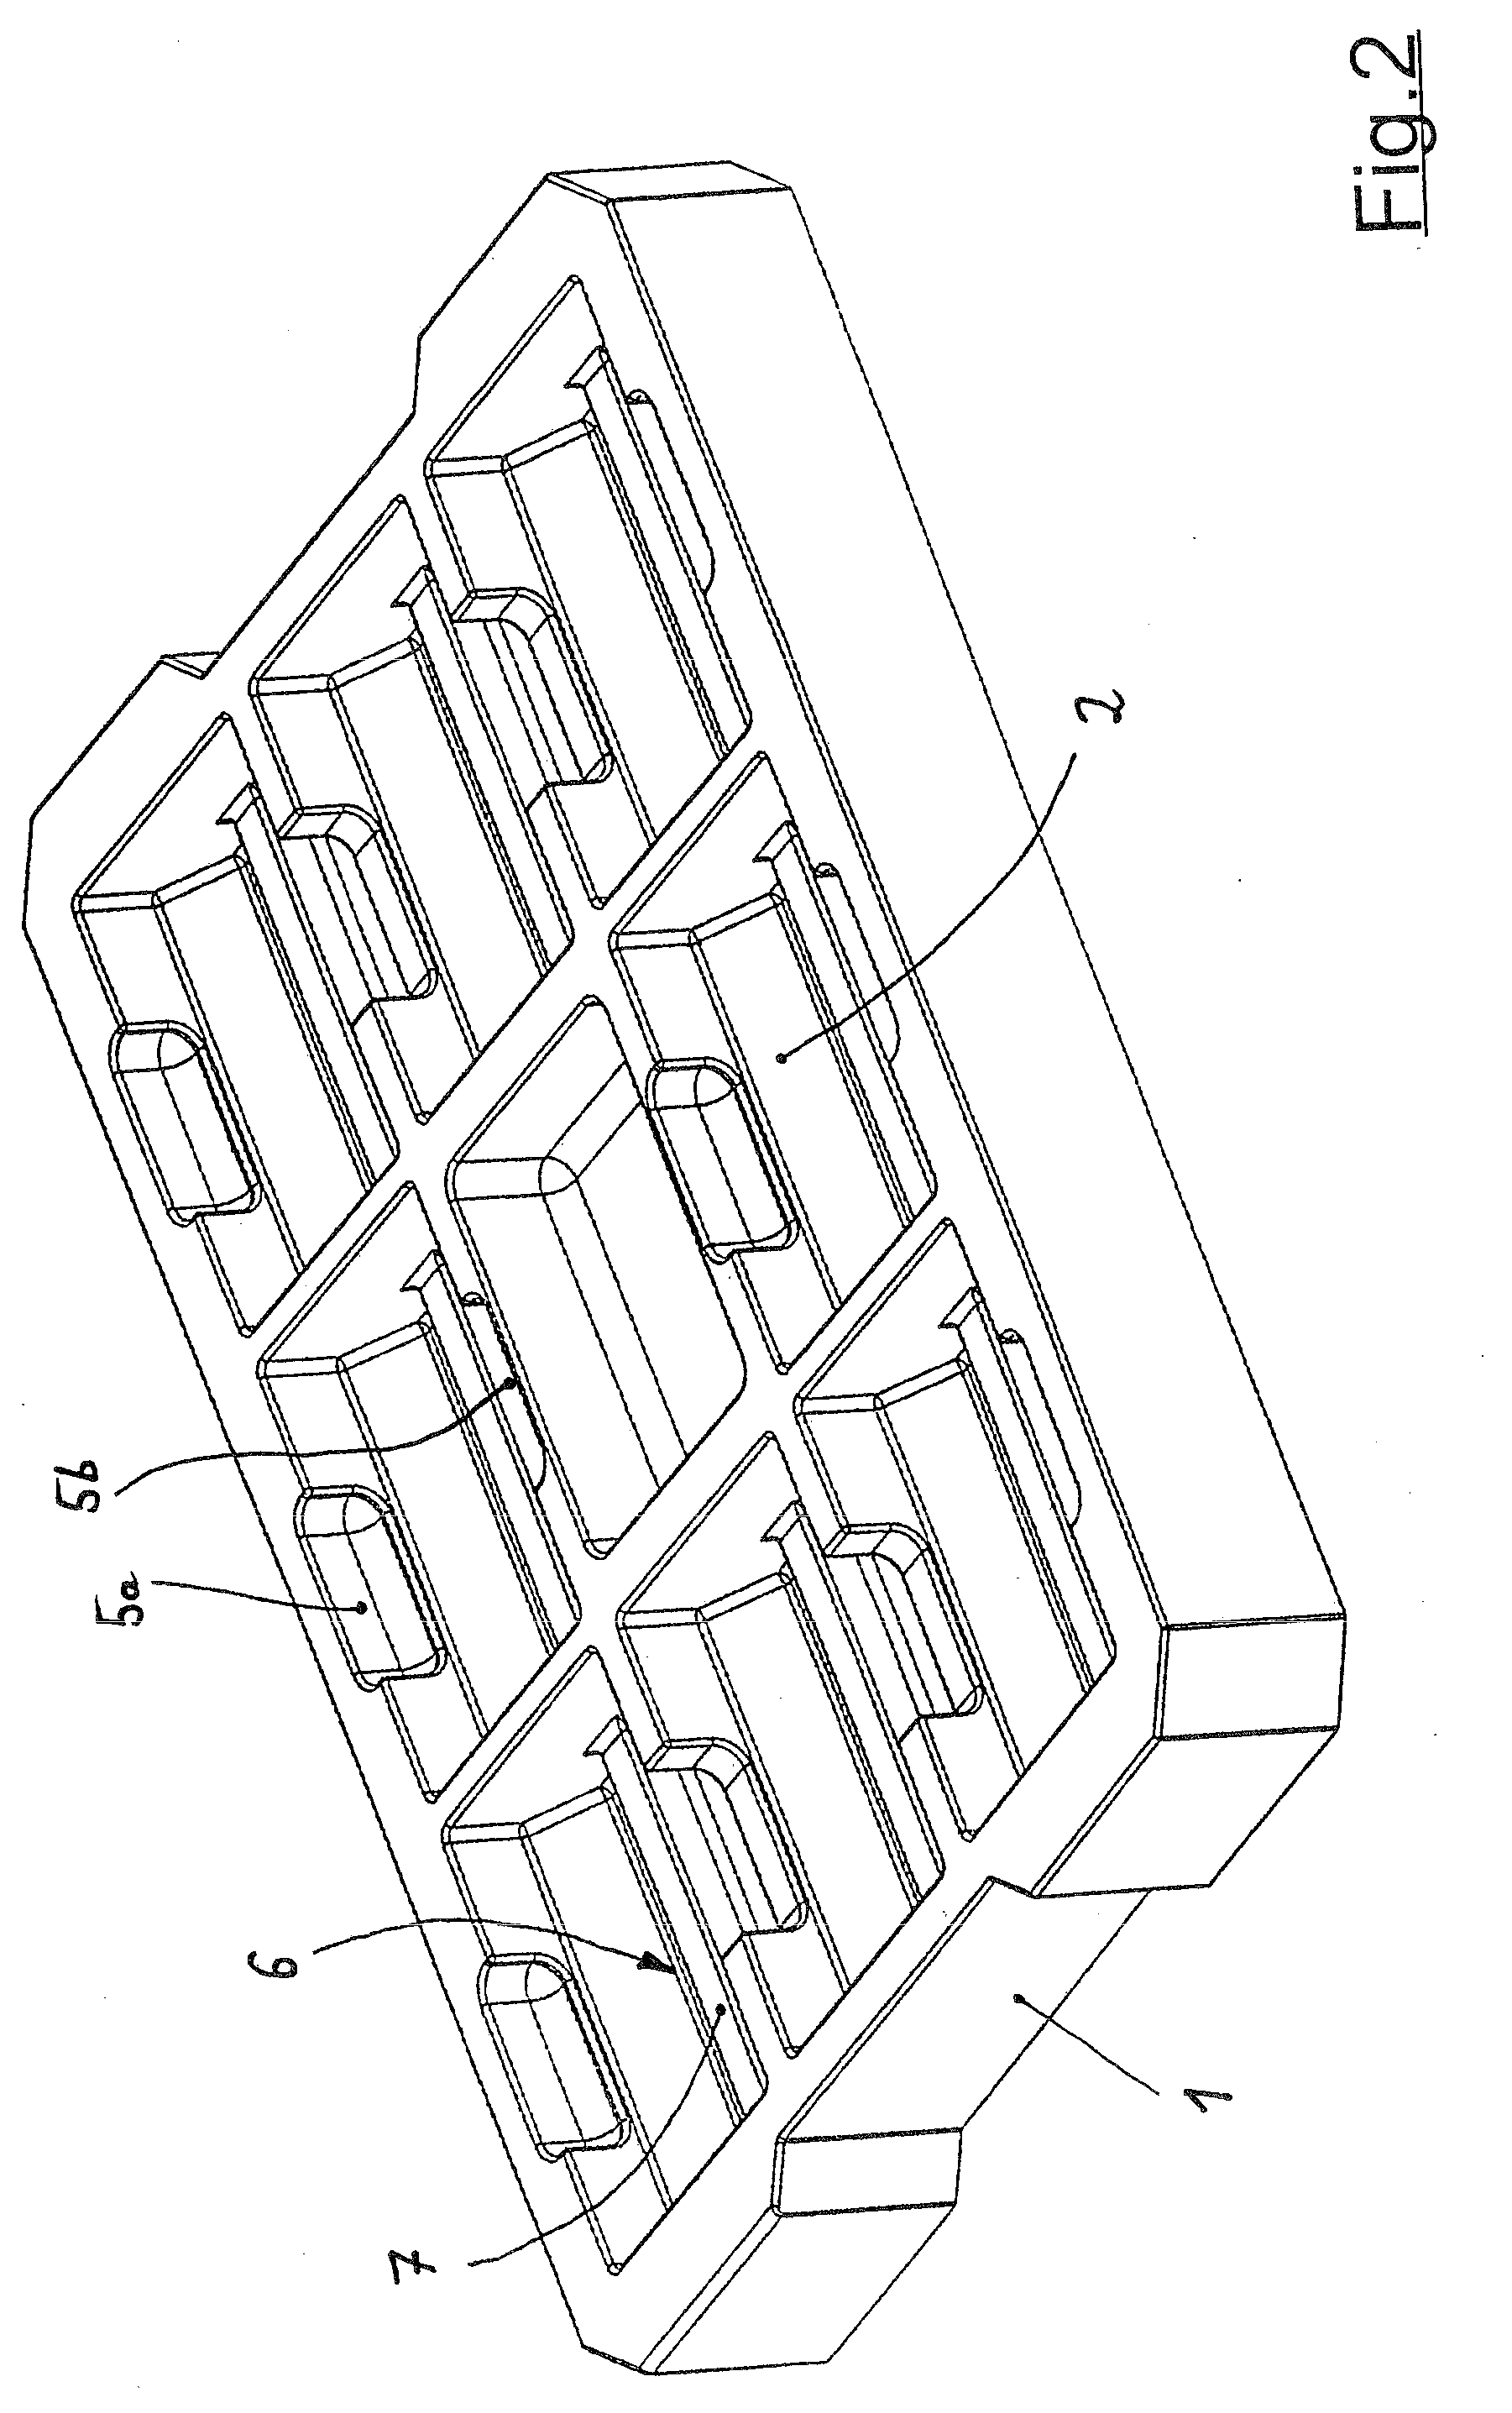 Palletlike arrangement for packaging goods